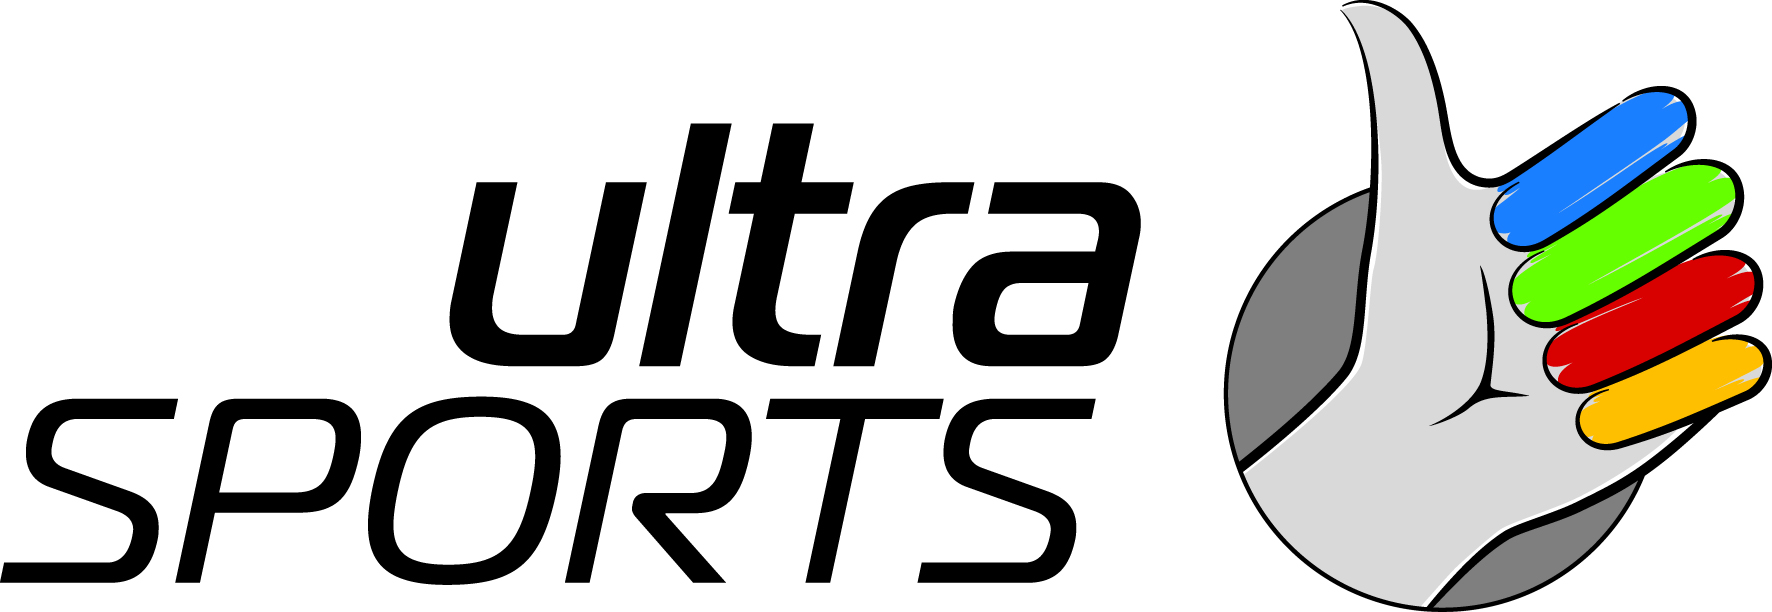 ultrasports schriftzug gestuft plushand